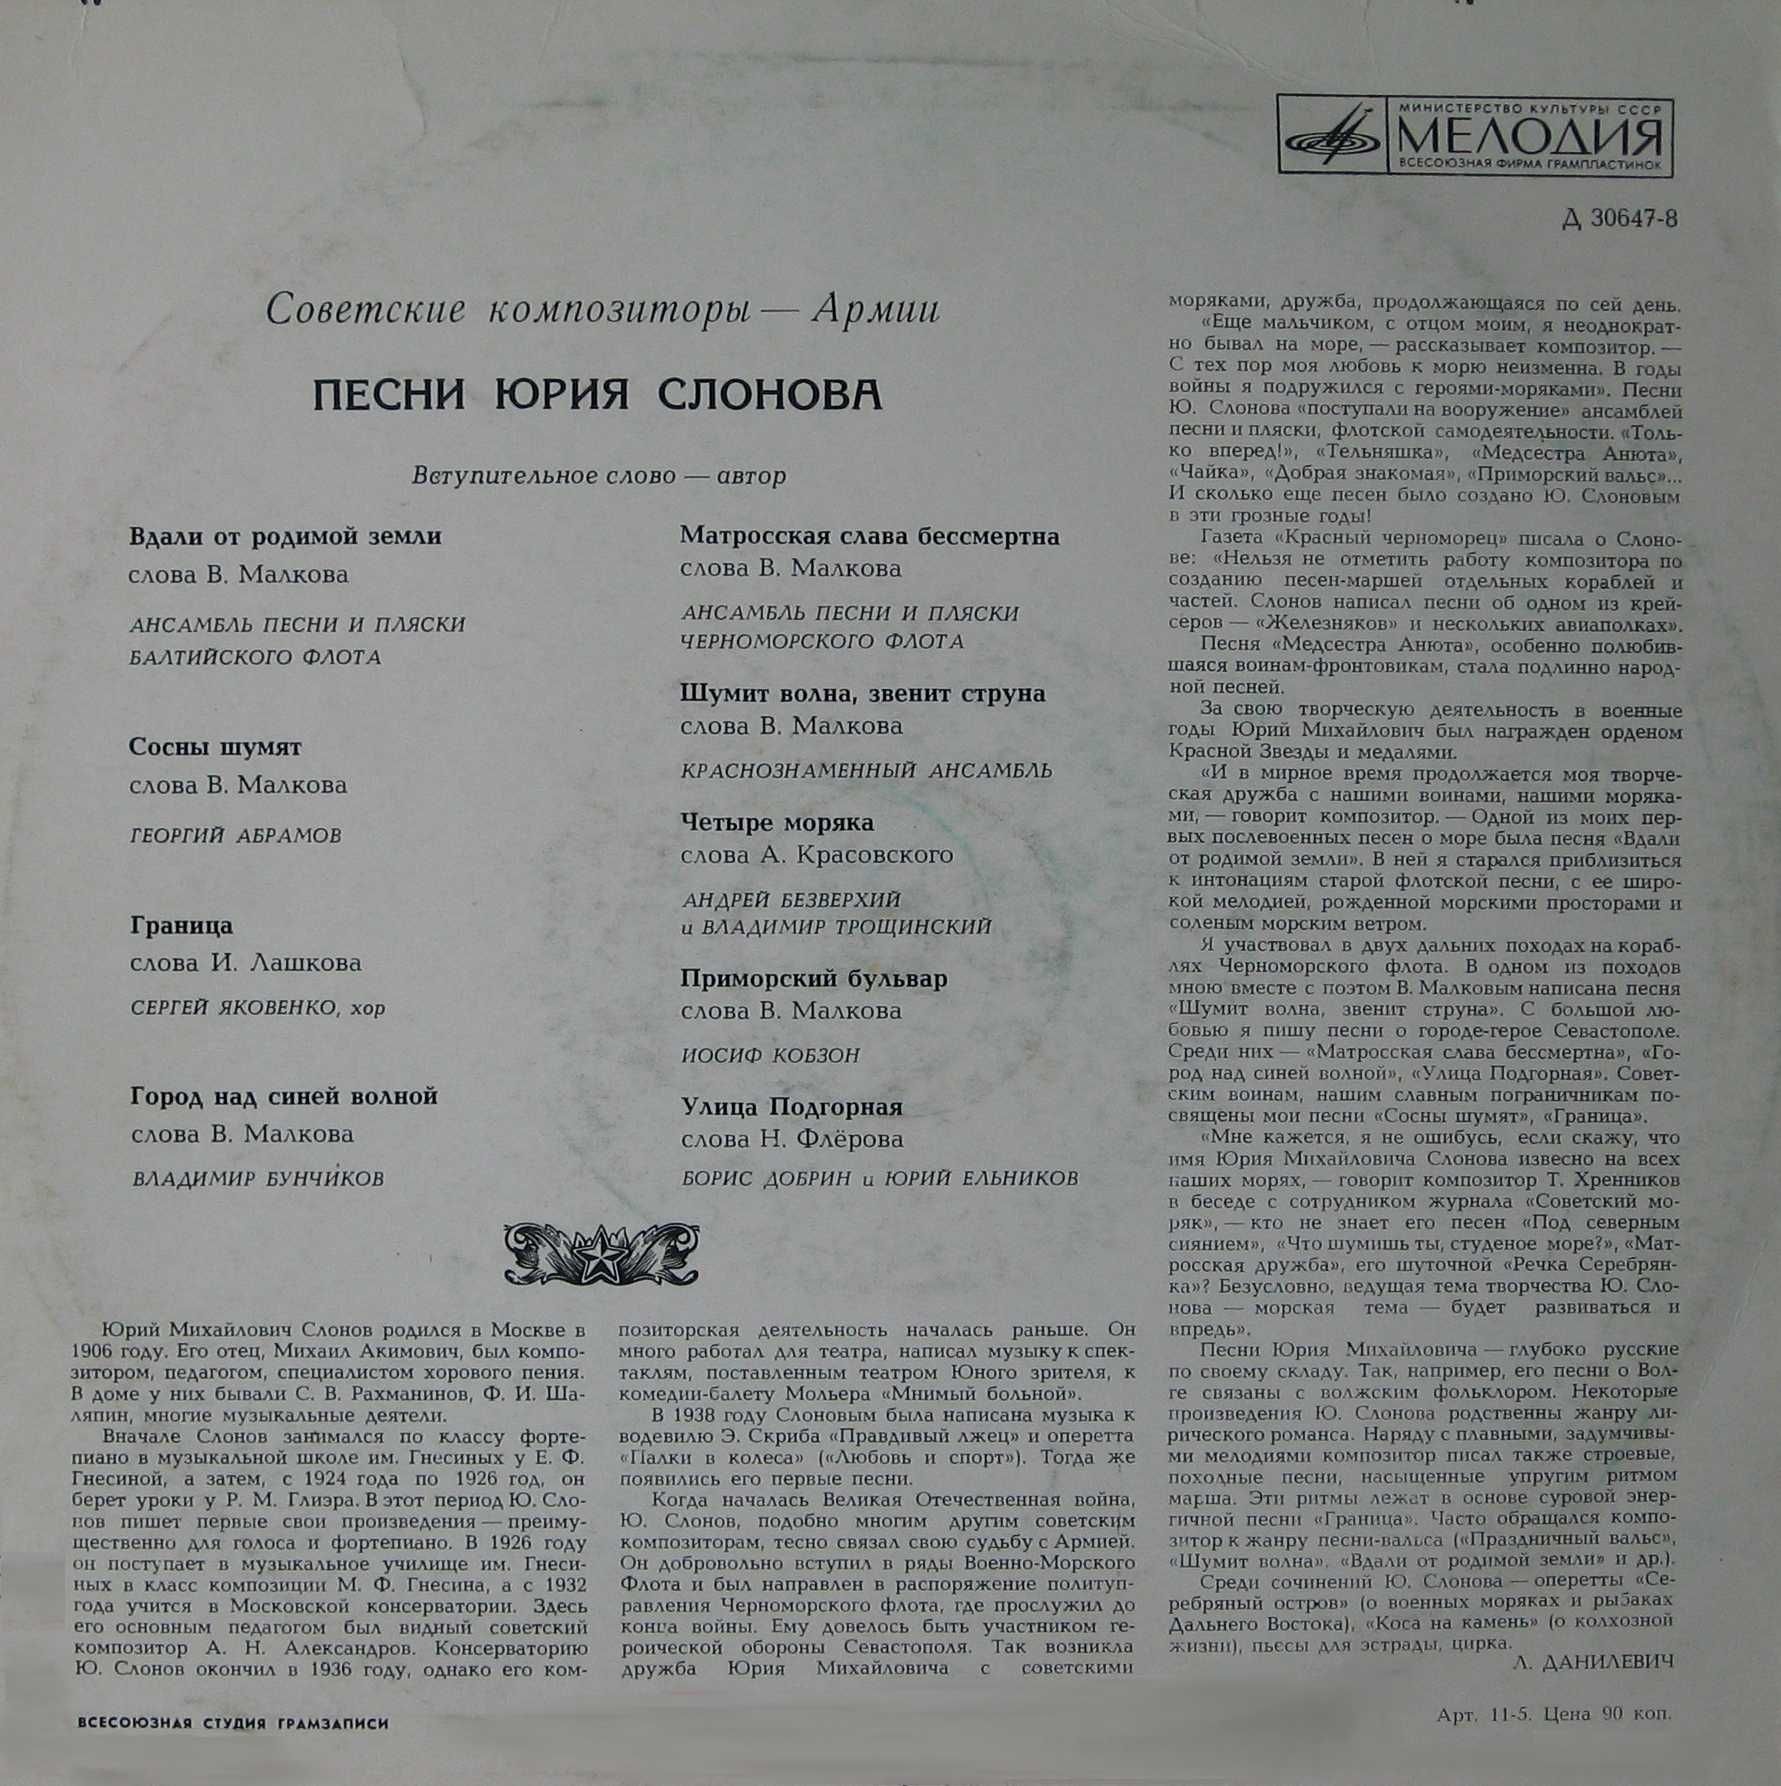 Песни Ю.М. СЛОНОВА. Из цикла «Советские композиторы – Армии»